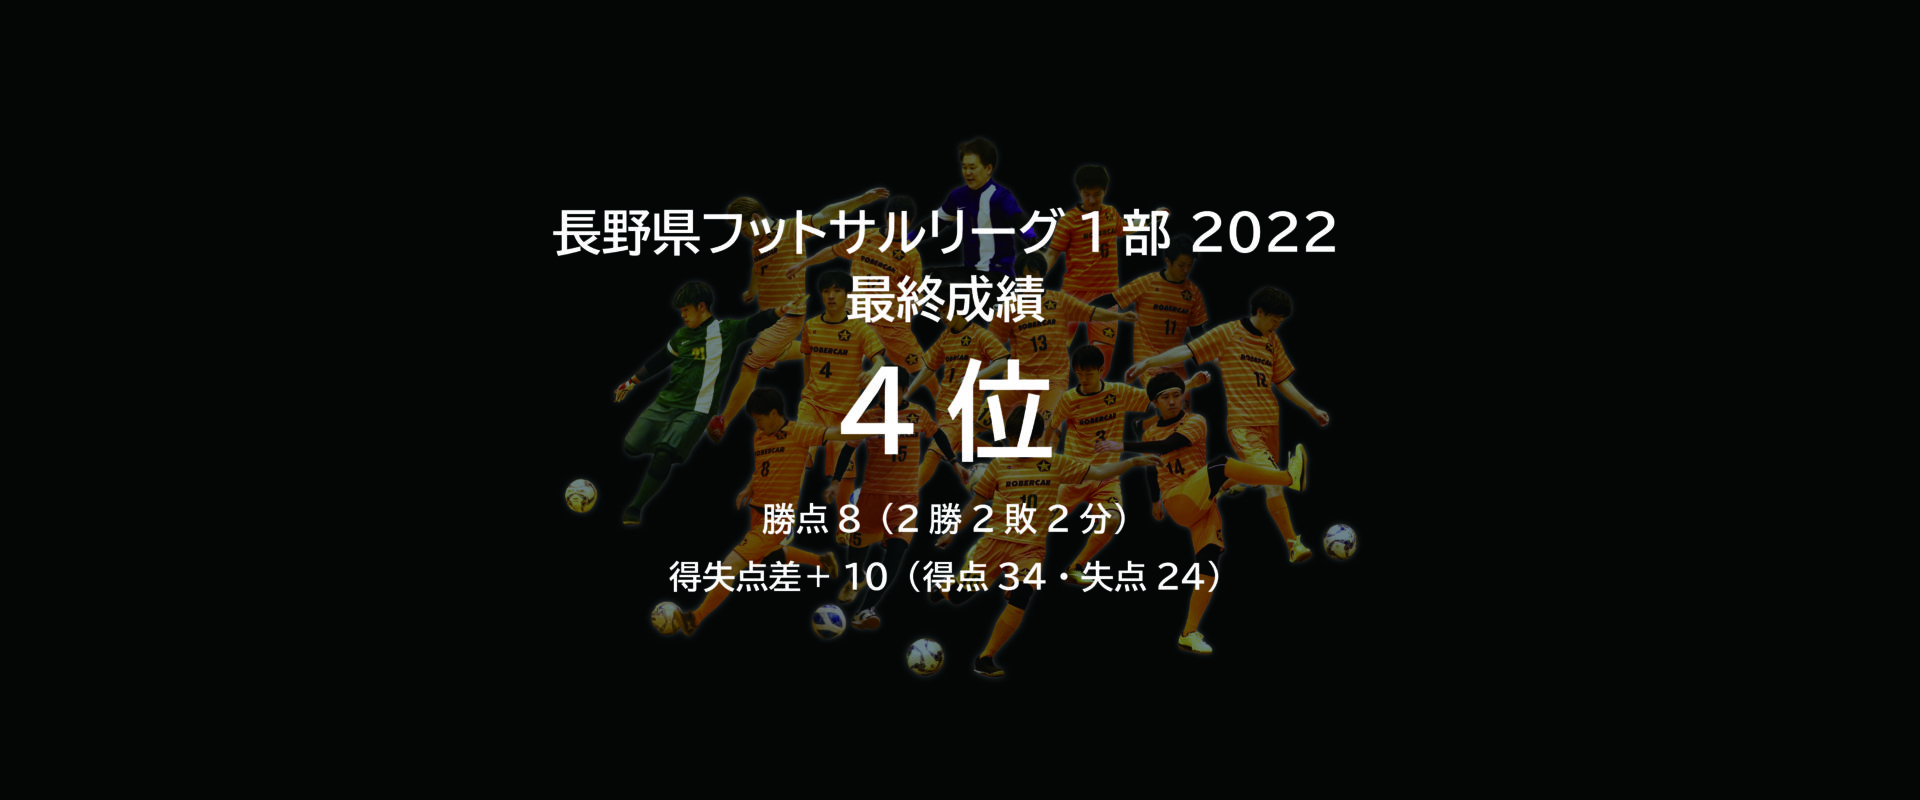 長野県フットサルリーグ1部 2022 最終成績